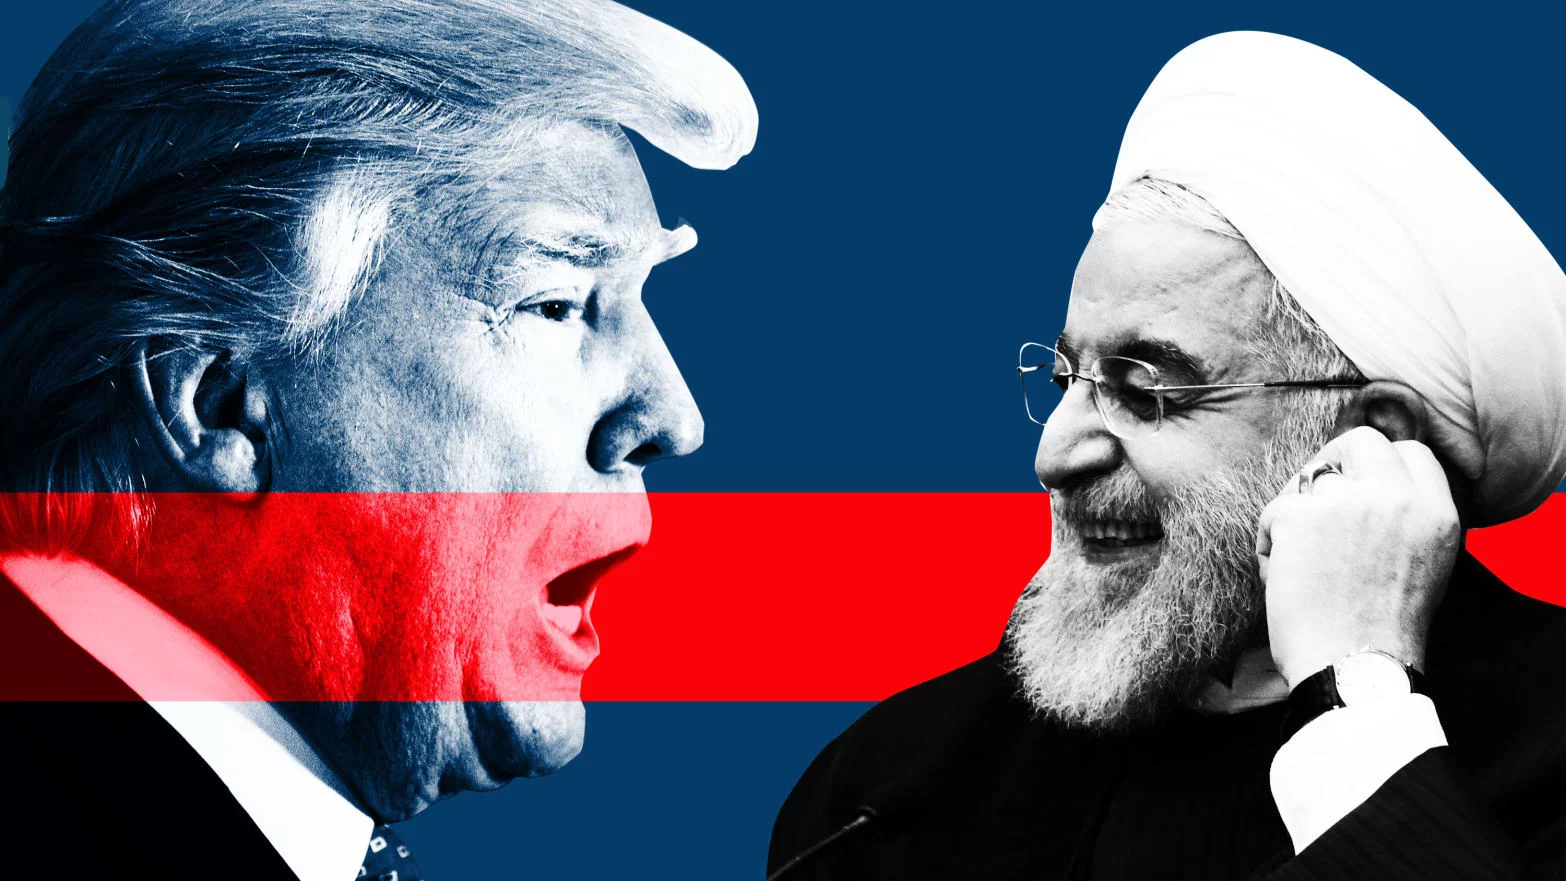 Wall Street reduce pérdidas pese a la escalada de tensión entre Irán y EEUU